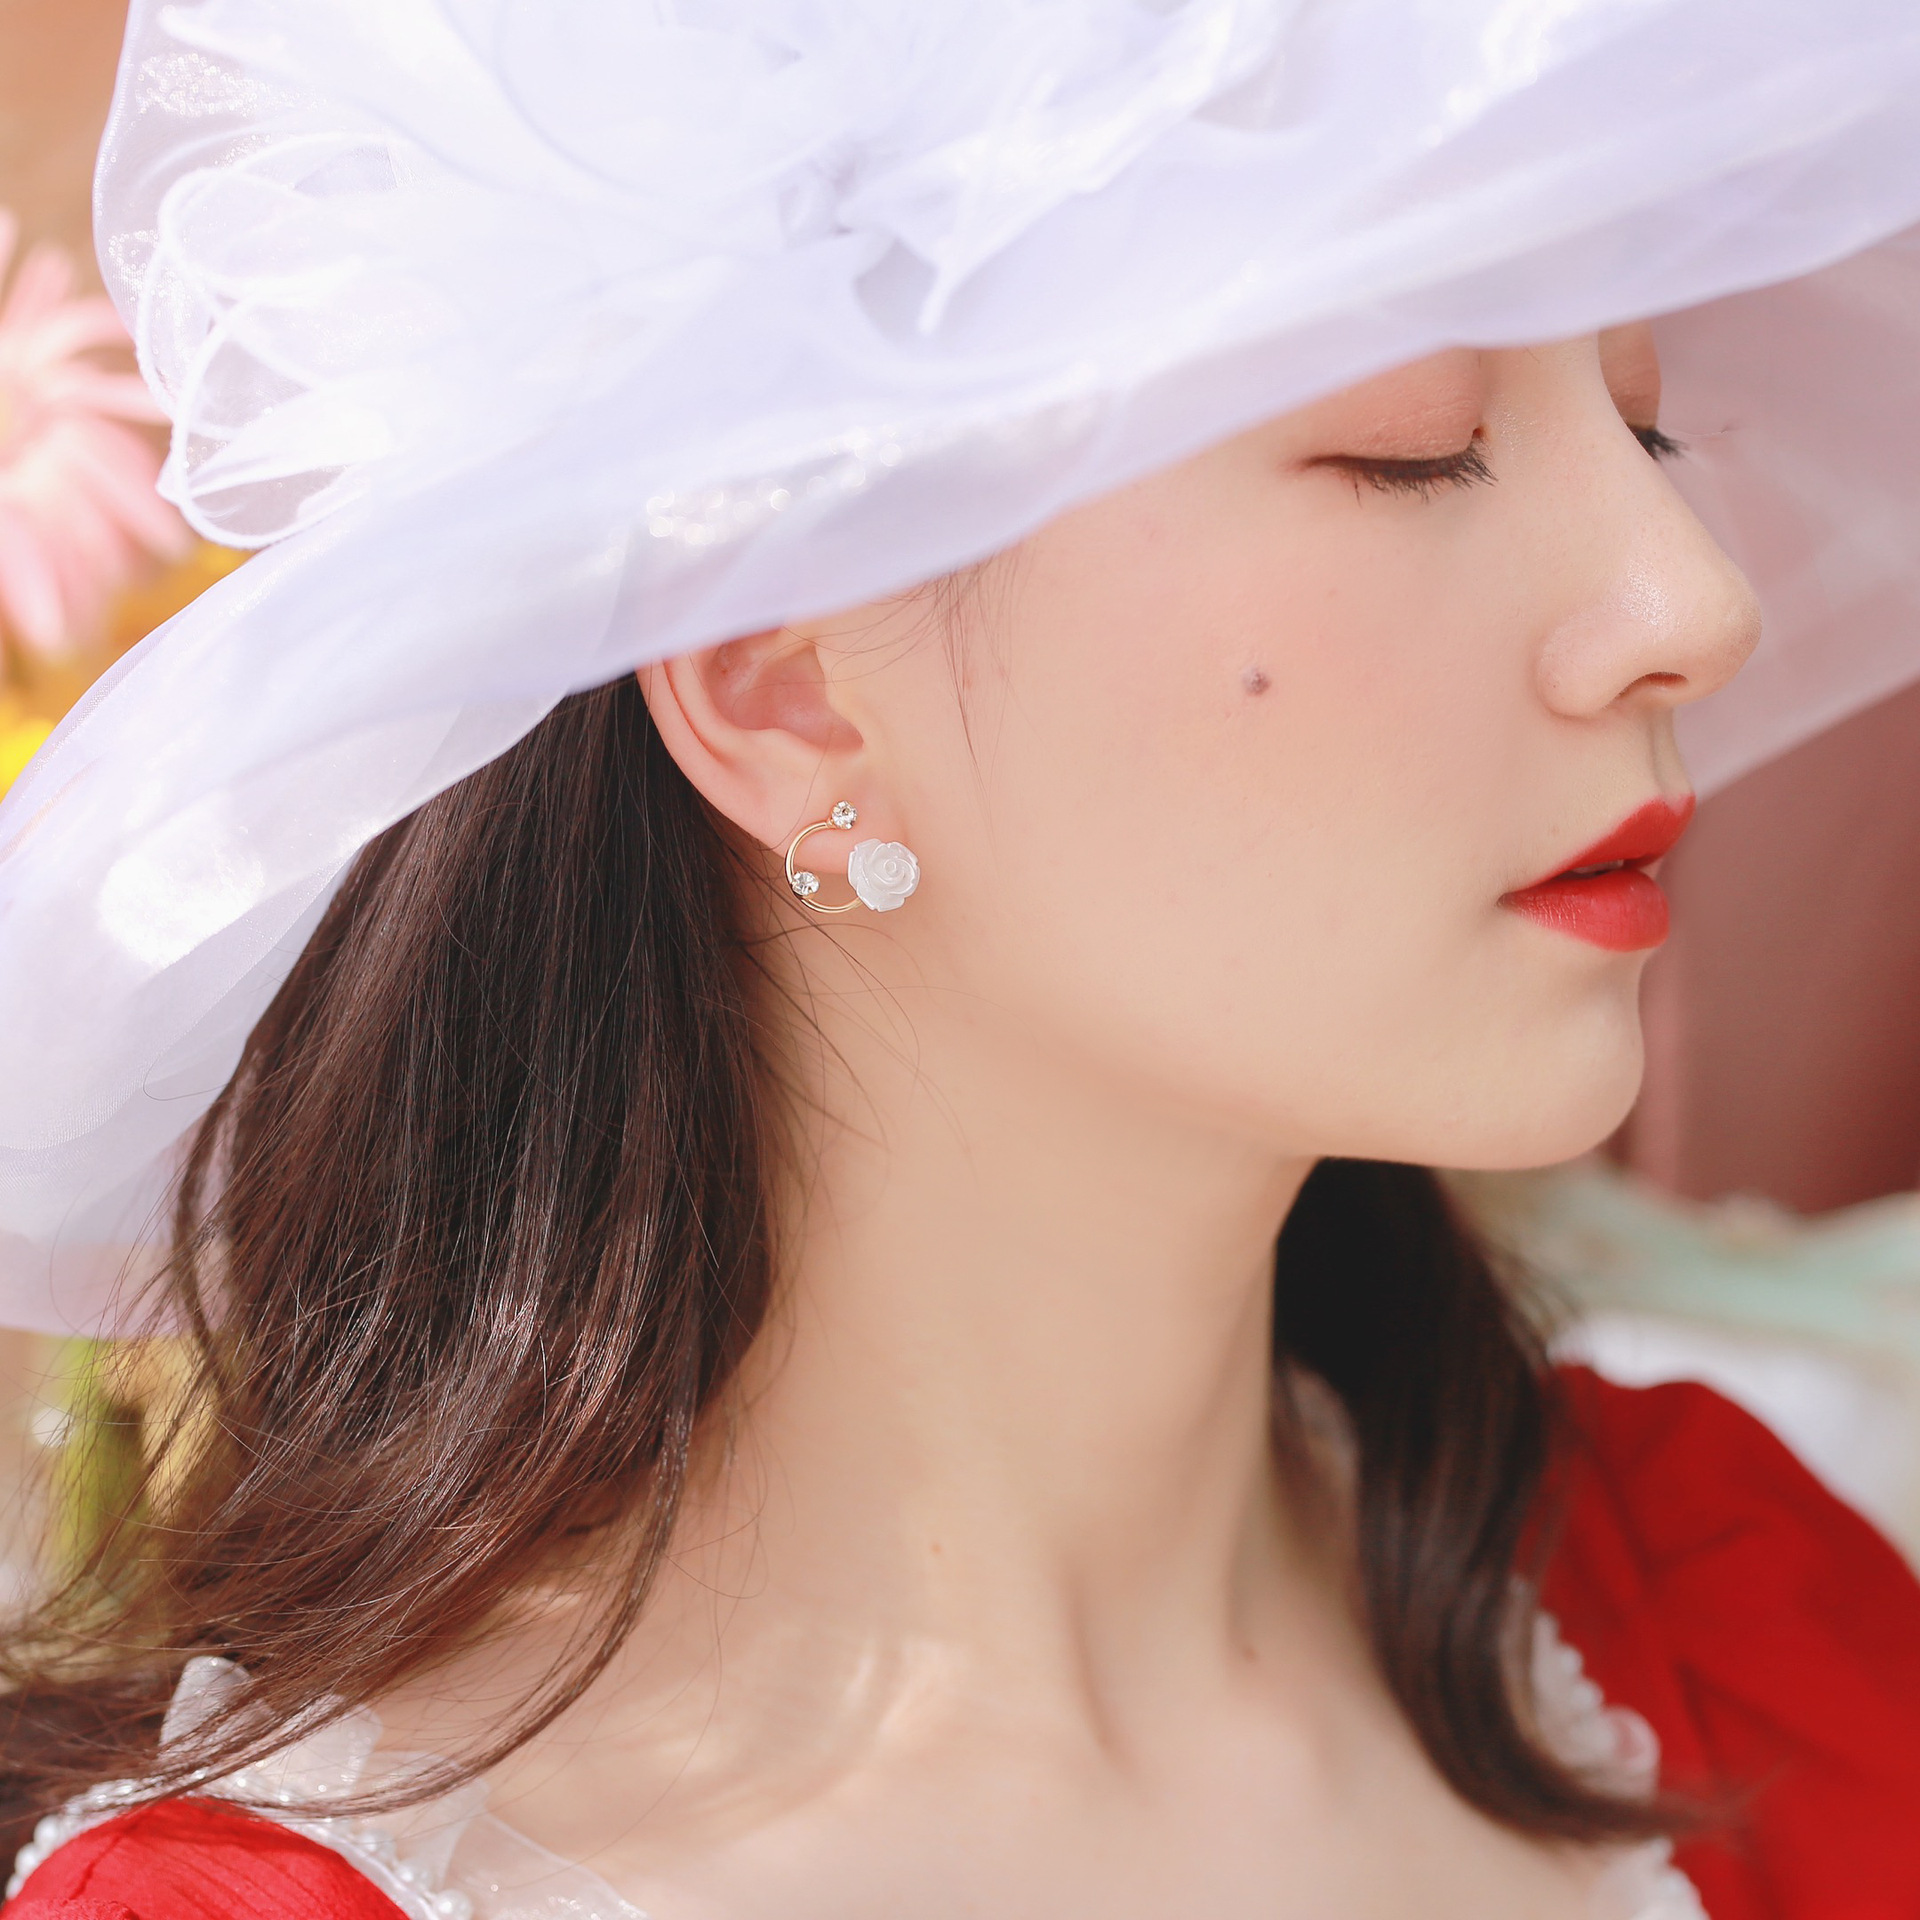 【THEO DÕI cửa hàng của chúng tôi -10K trừ 5K】[Rose of Versailles] Bông tai hoa trang nhã của Pháp có đính kim cương và không có kẹp tai